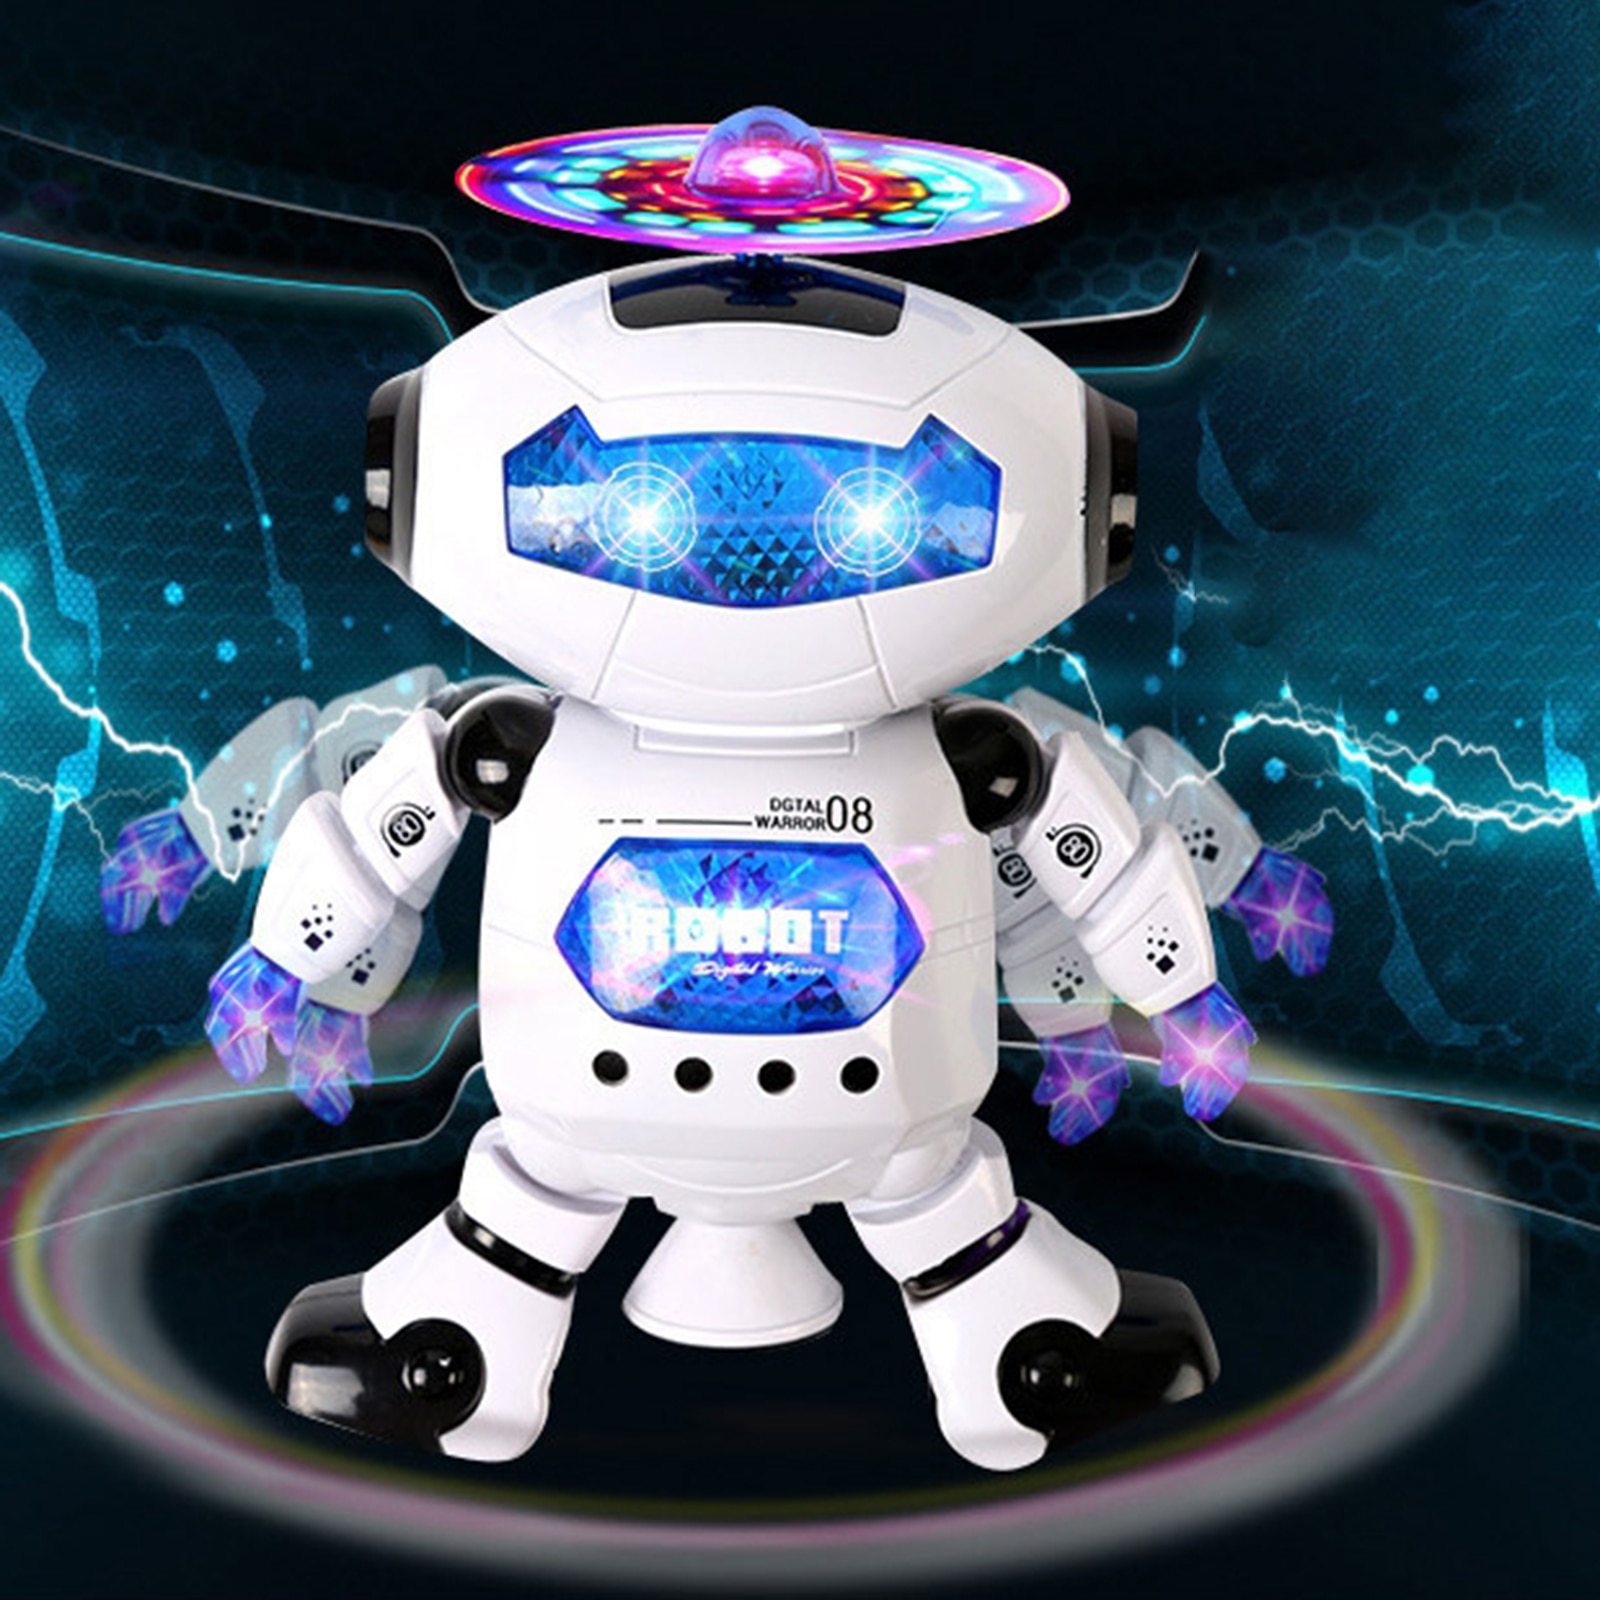 ของเล่น หุ่นยนต์ หุ่นยนต์อิเล็กทรอนิกส์ ของเล่นหุ่นยนต์ เต้นได้ มีเพลง ไฟสีสัน ของเล่นสำหรับเด็ก เพิ่มความสร้างสรรค์ เหมาะสำหรับเด็ก3ขวบขึ้นไป Creative Robot Toy Electronic Walking Dancing Robot Toys with Music Lightening for Kids